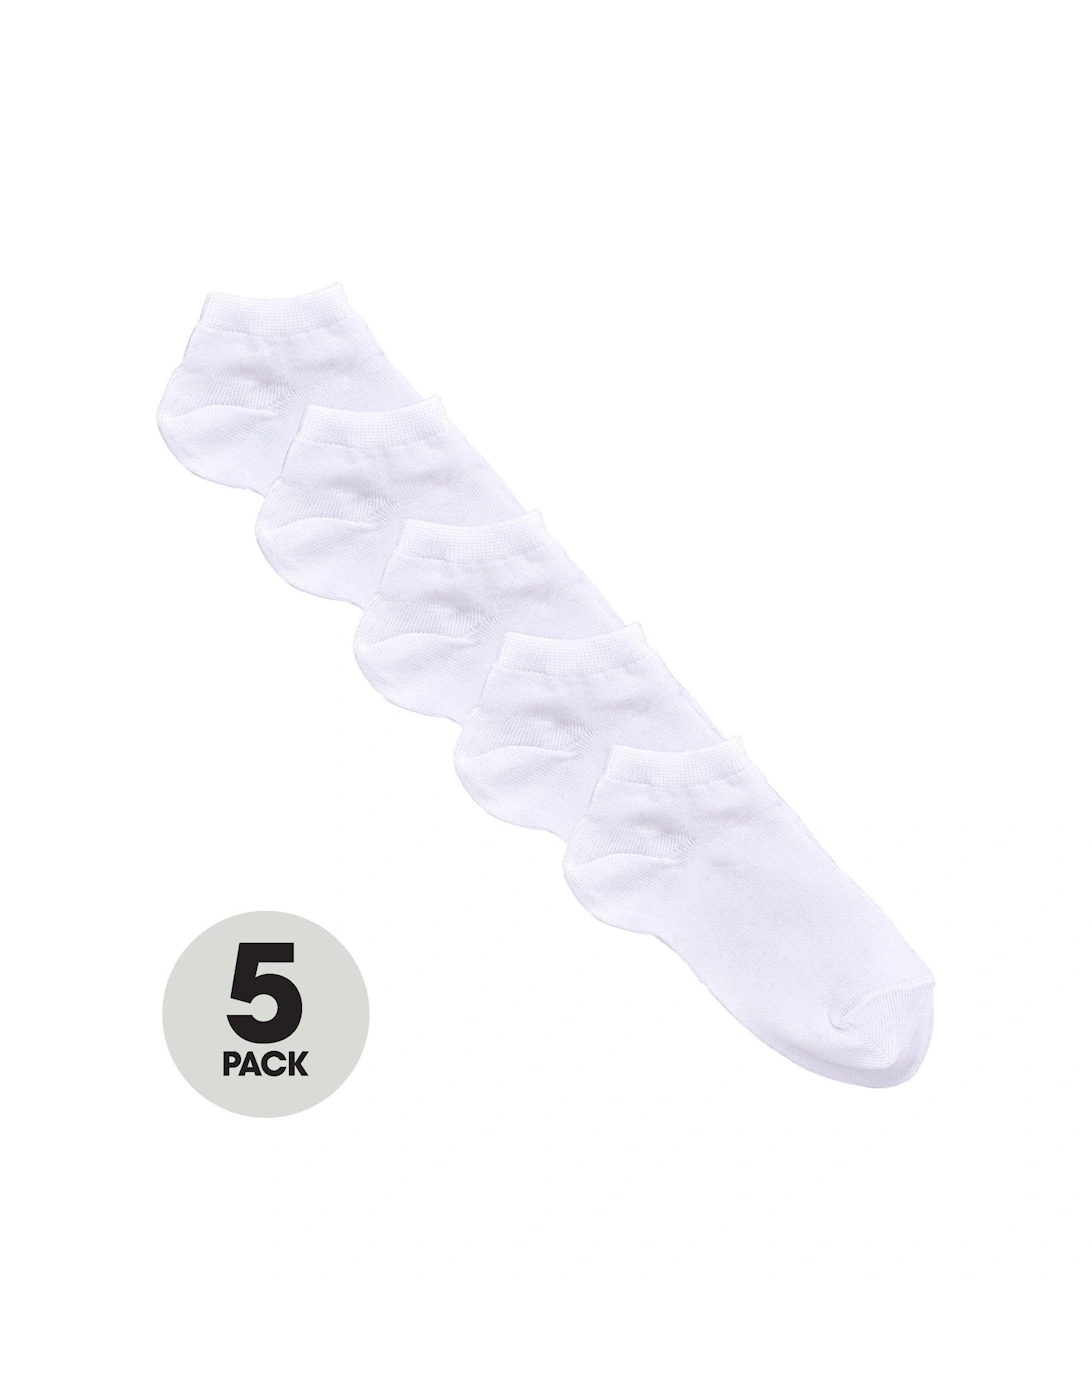 5 Pack Unisex Trainer Liner Socks - White, 4 of 3